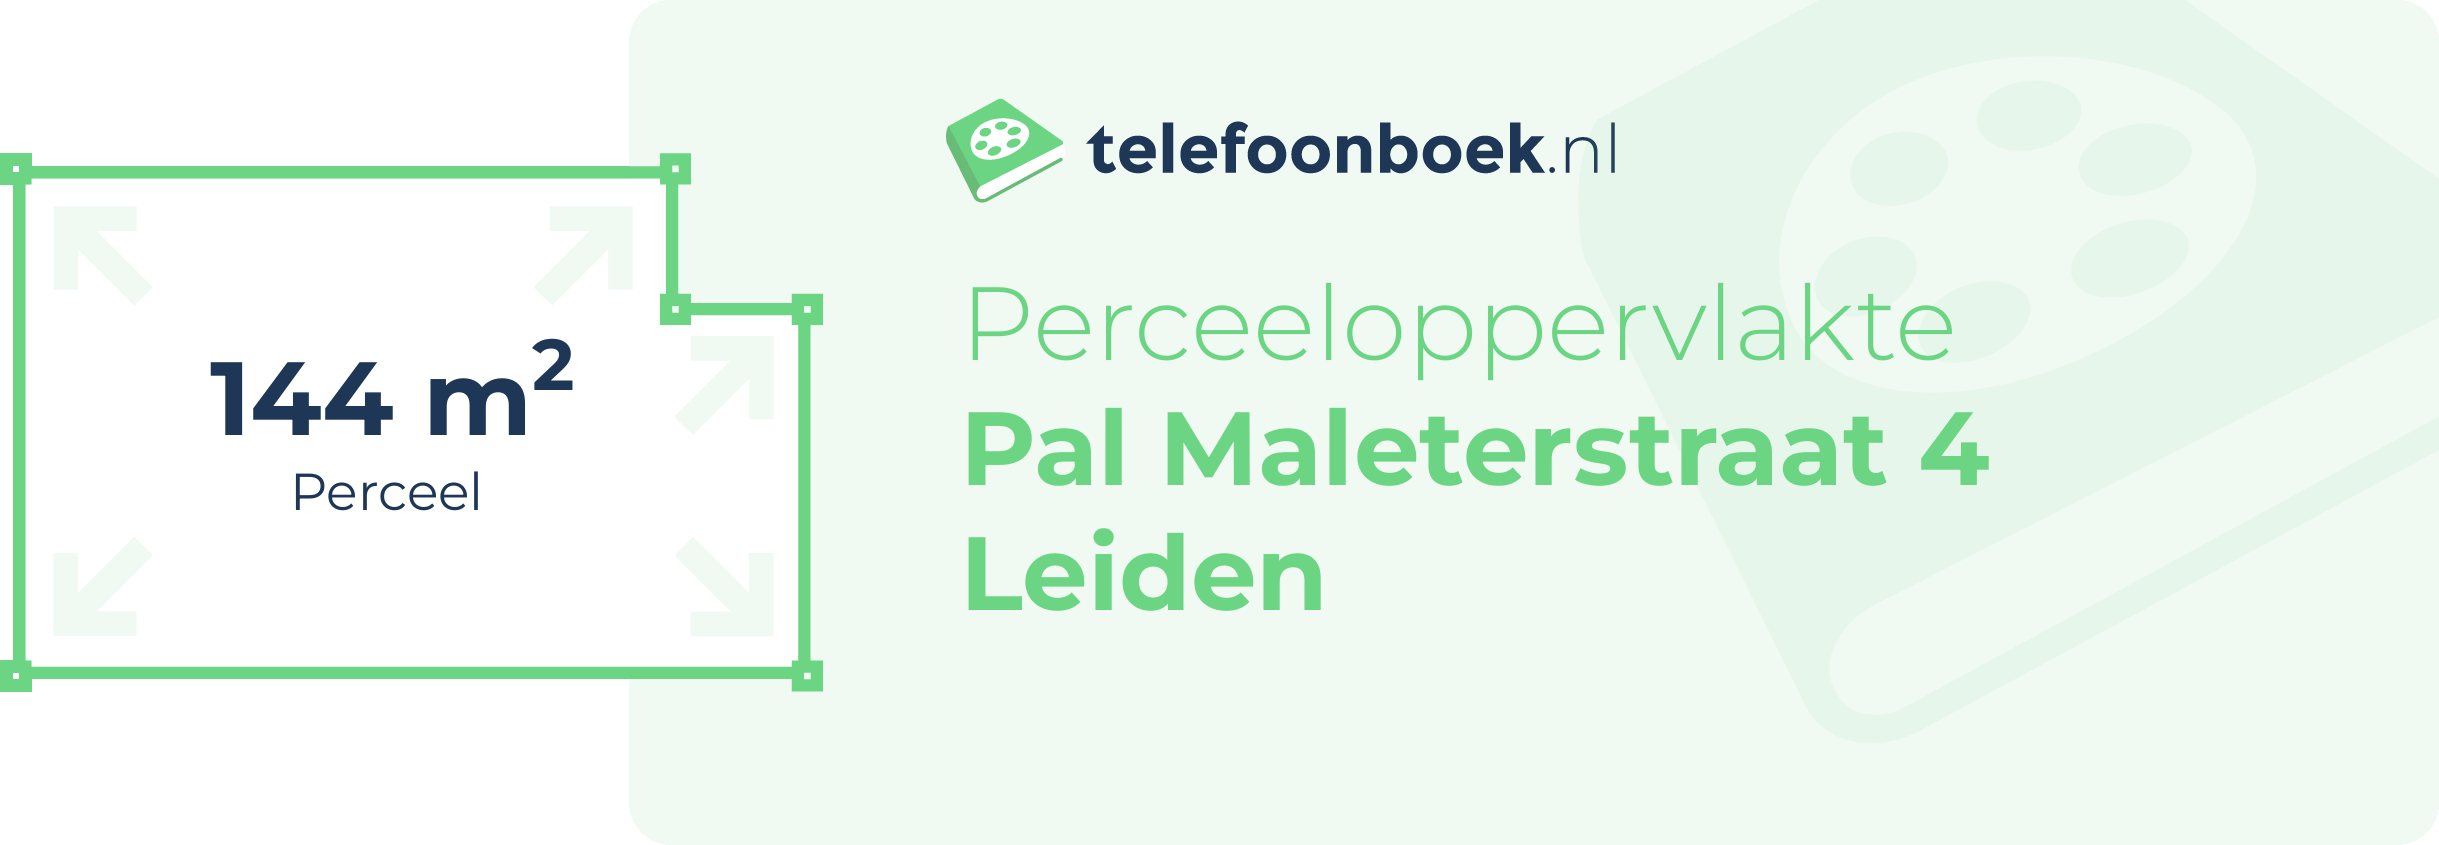 Perceeloppervlakte Pal Maleterstraat 4 Leiden